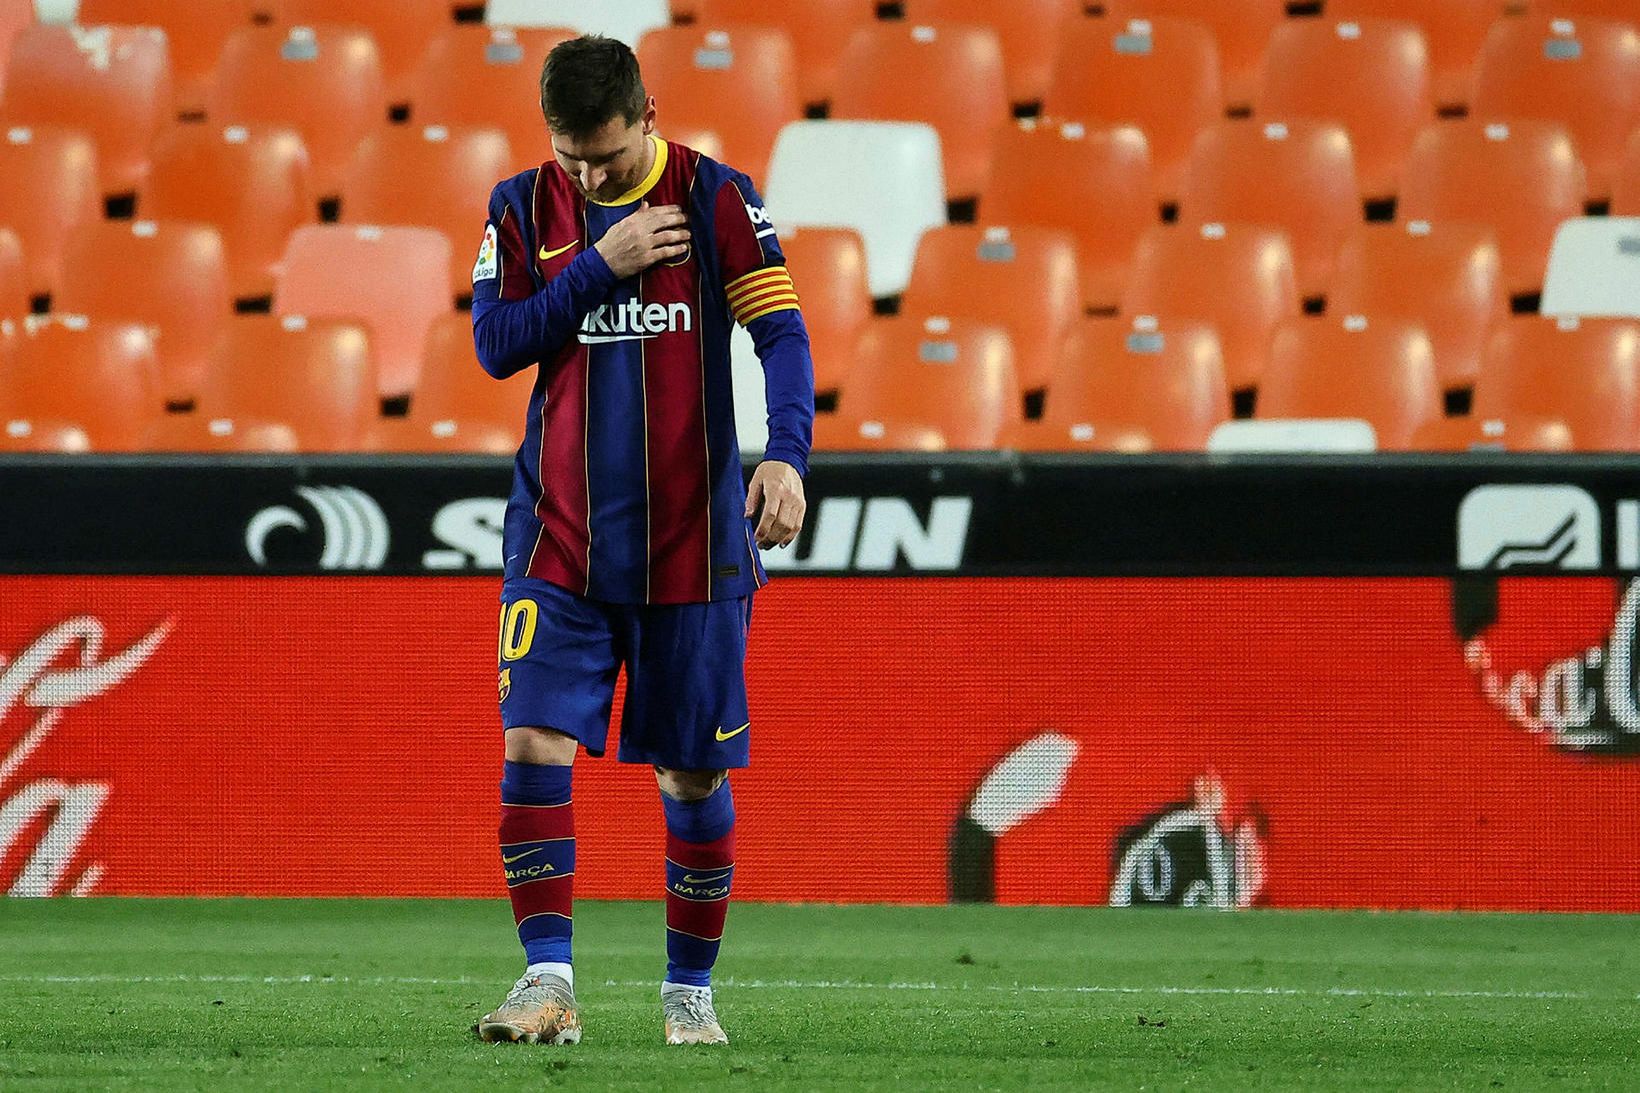 Lionel Messi skoraði tvívegis fyrir Barcelona í kvöld.